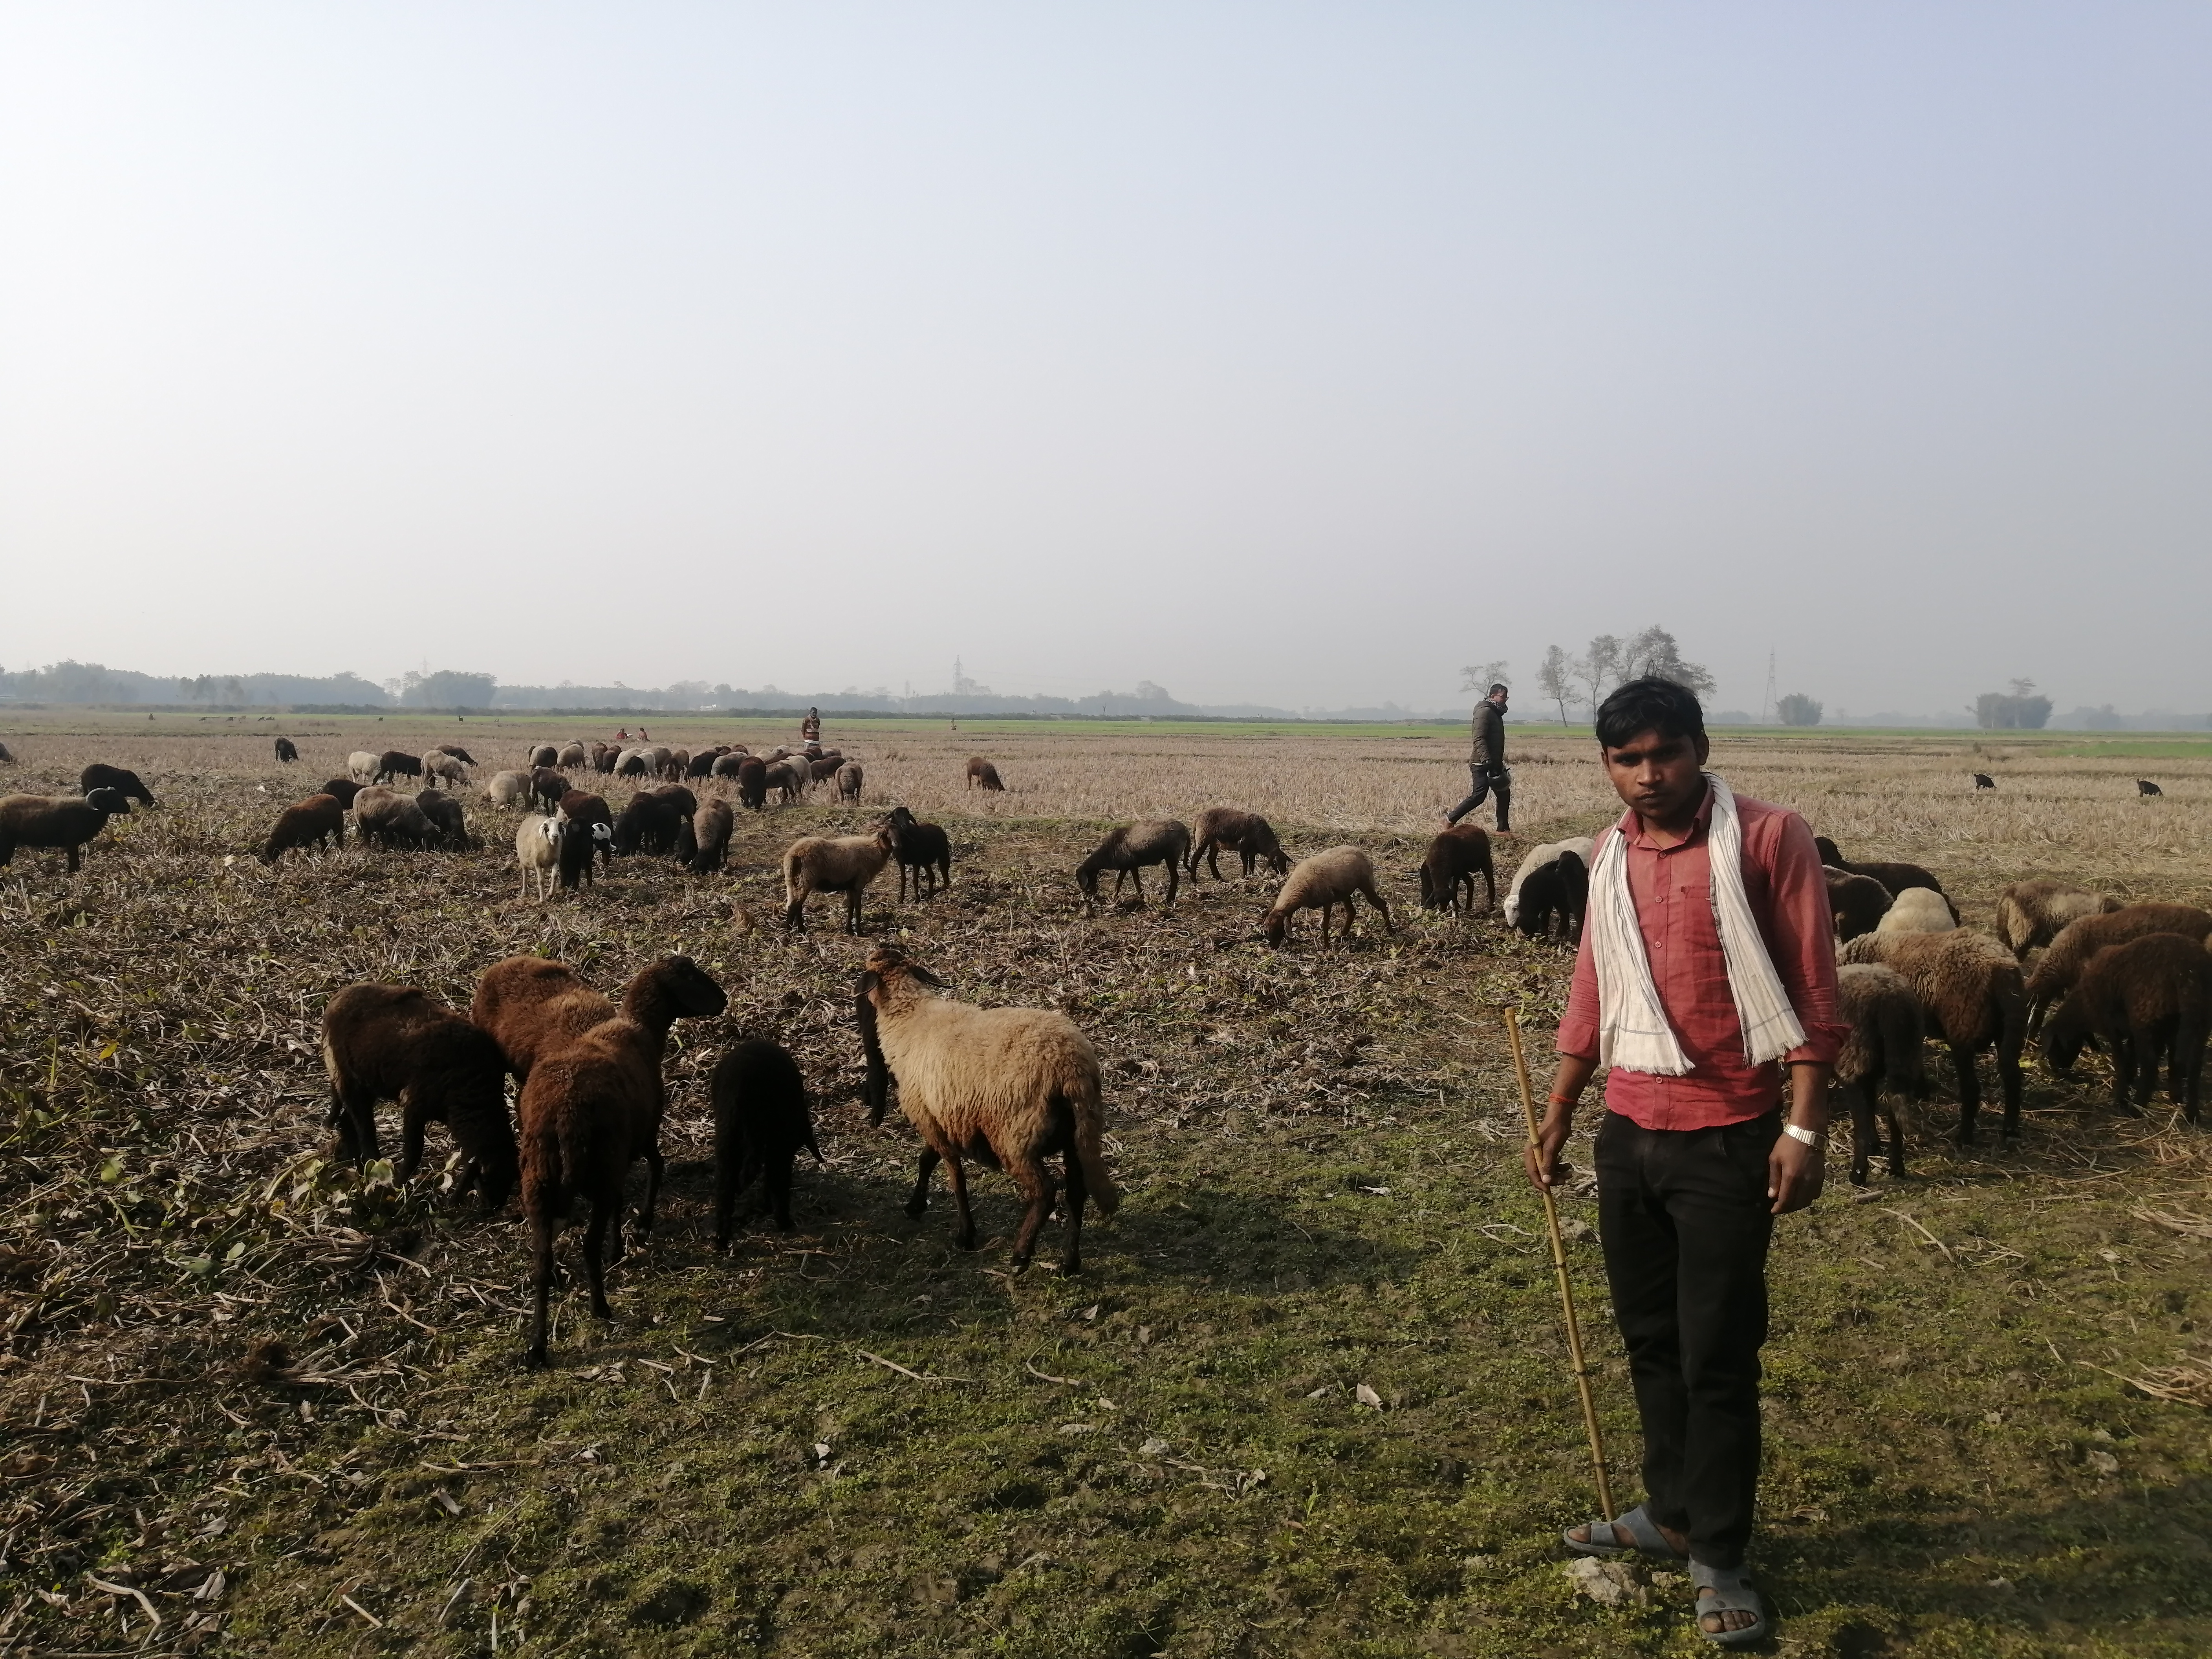 paal shepherd community sunsari nepal pradeshportal.com